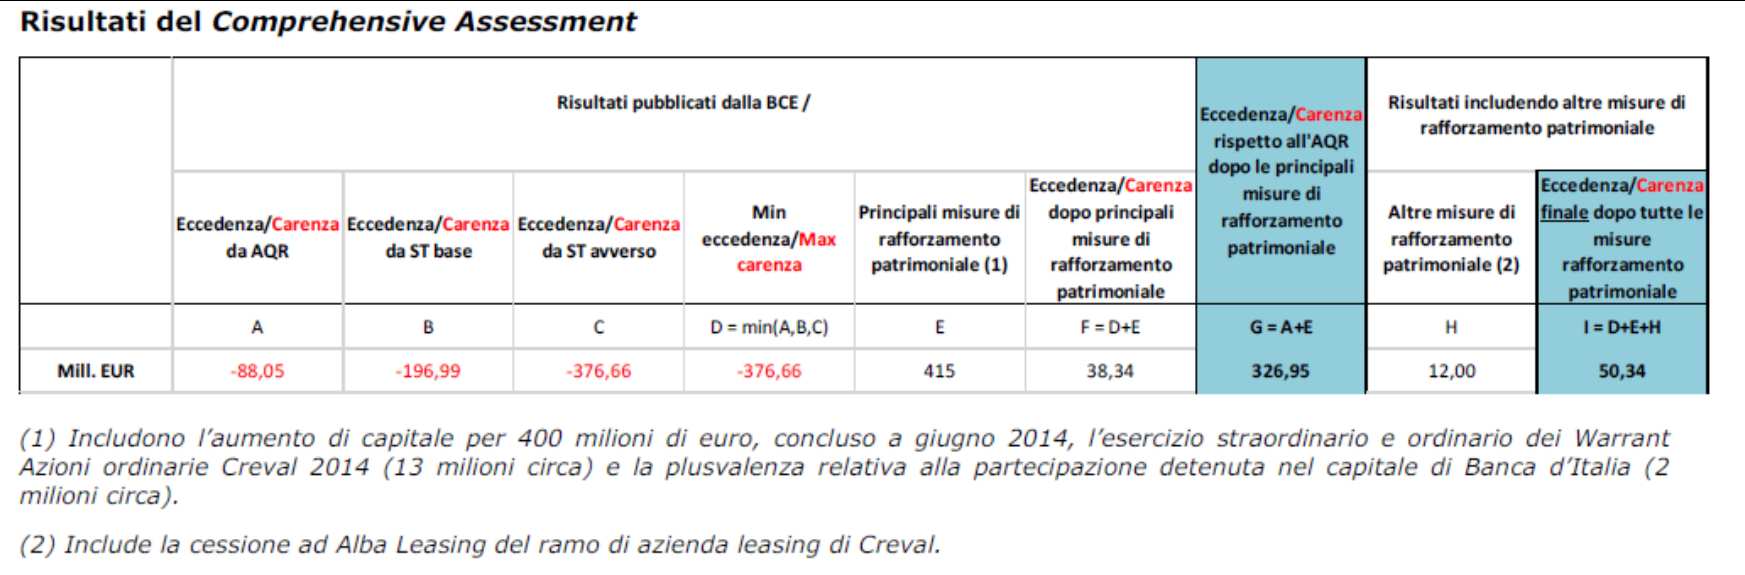 Ad esito del Comprehensive Assessment, e tenuto conto di tutte le misure di rafforzamento patrimoniali effettuate nel corso del 2014 - principalmente l aumento di capitale di 400 milioni di euro